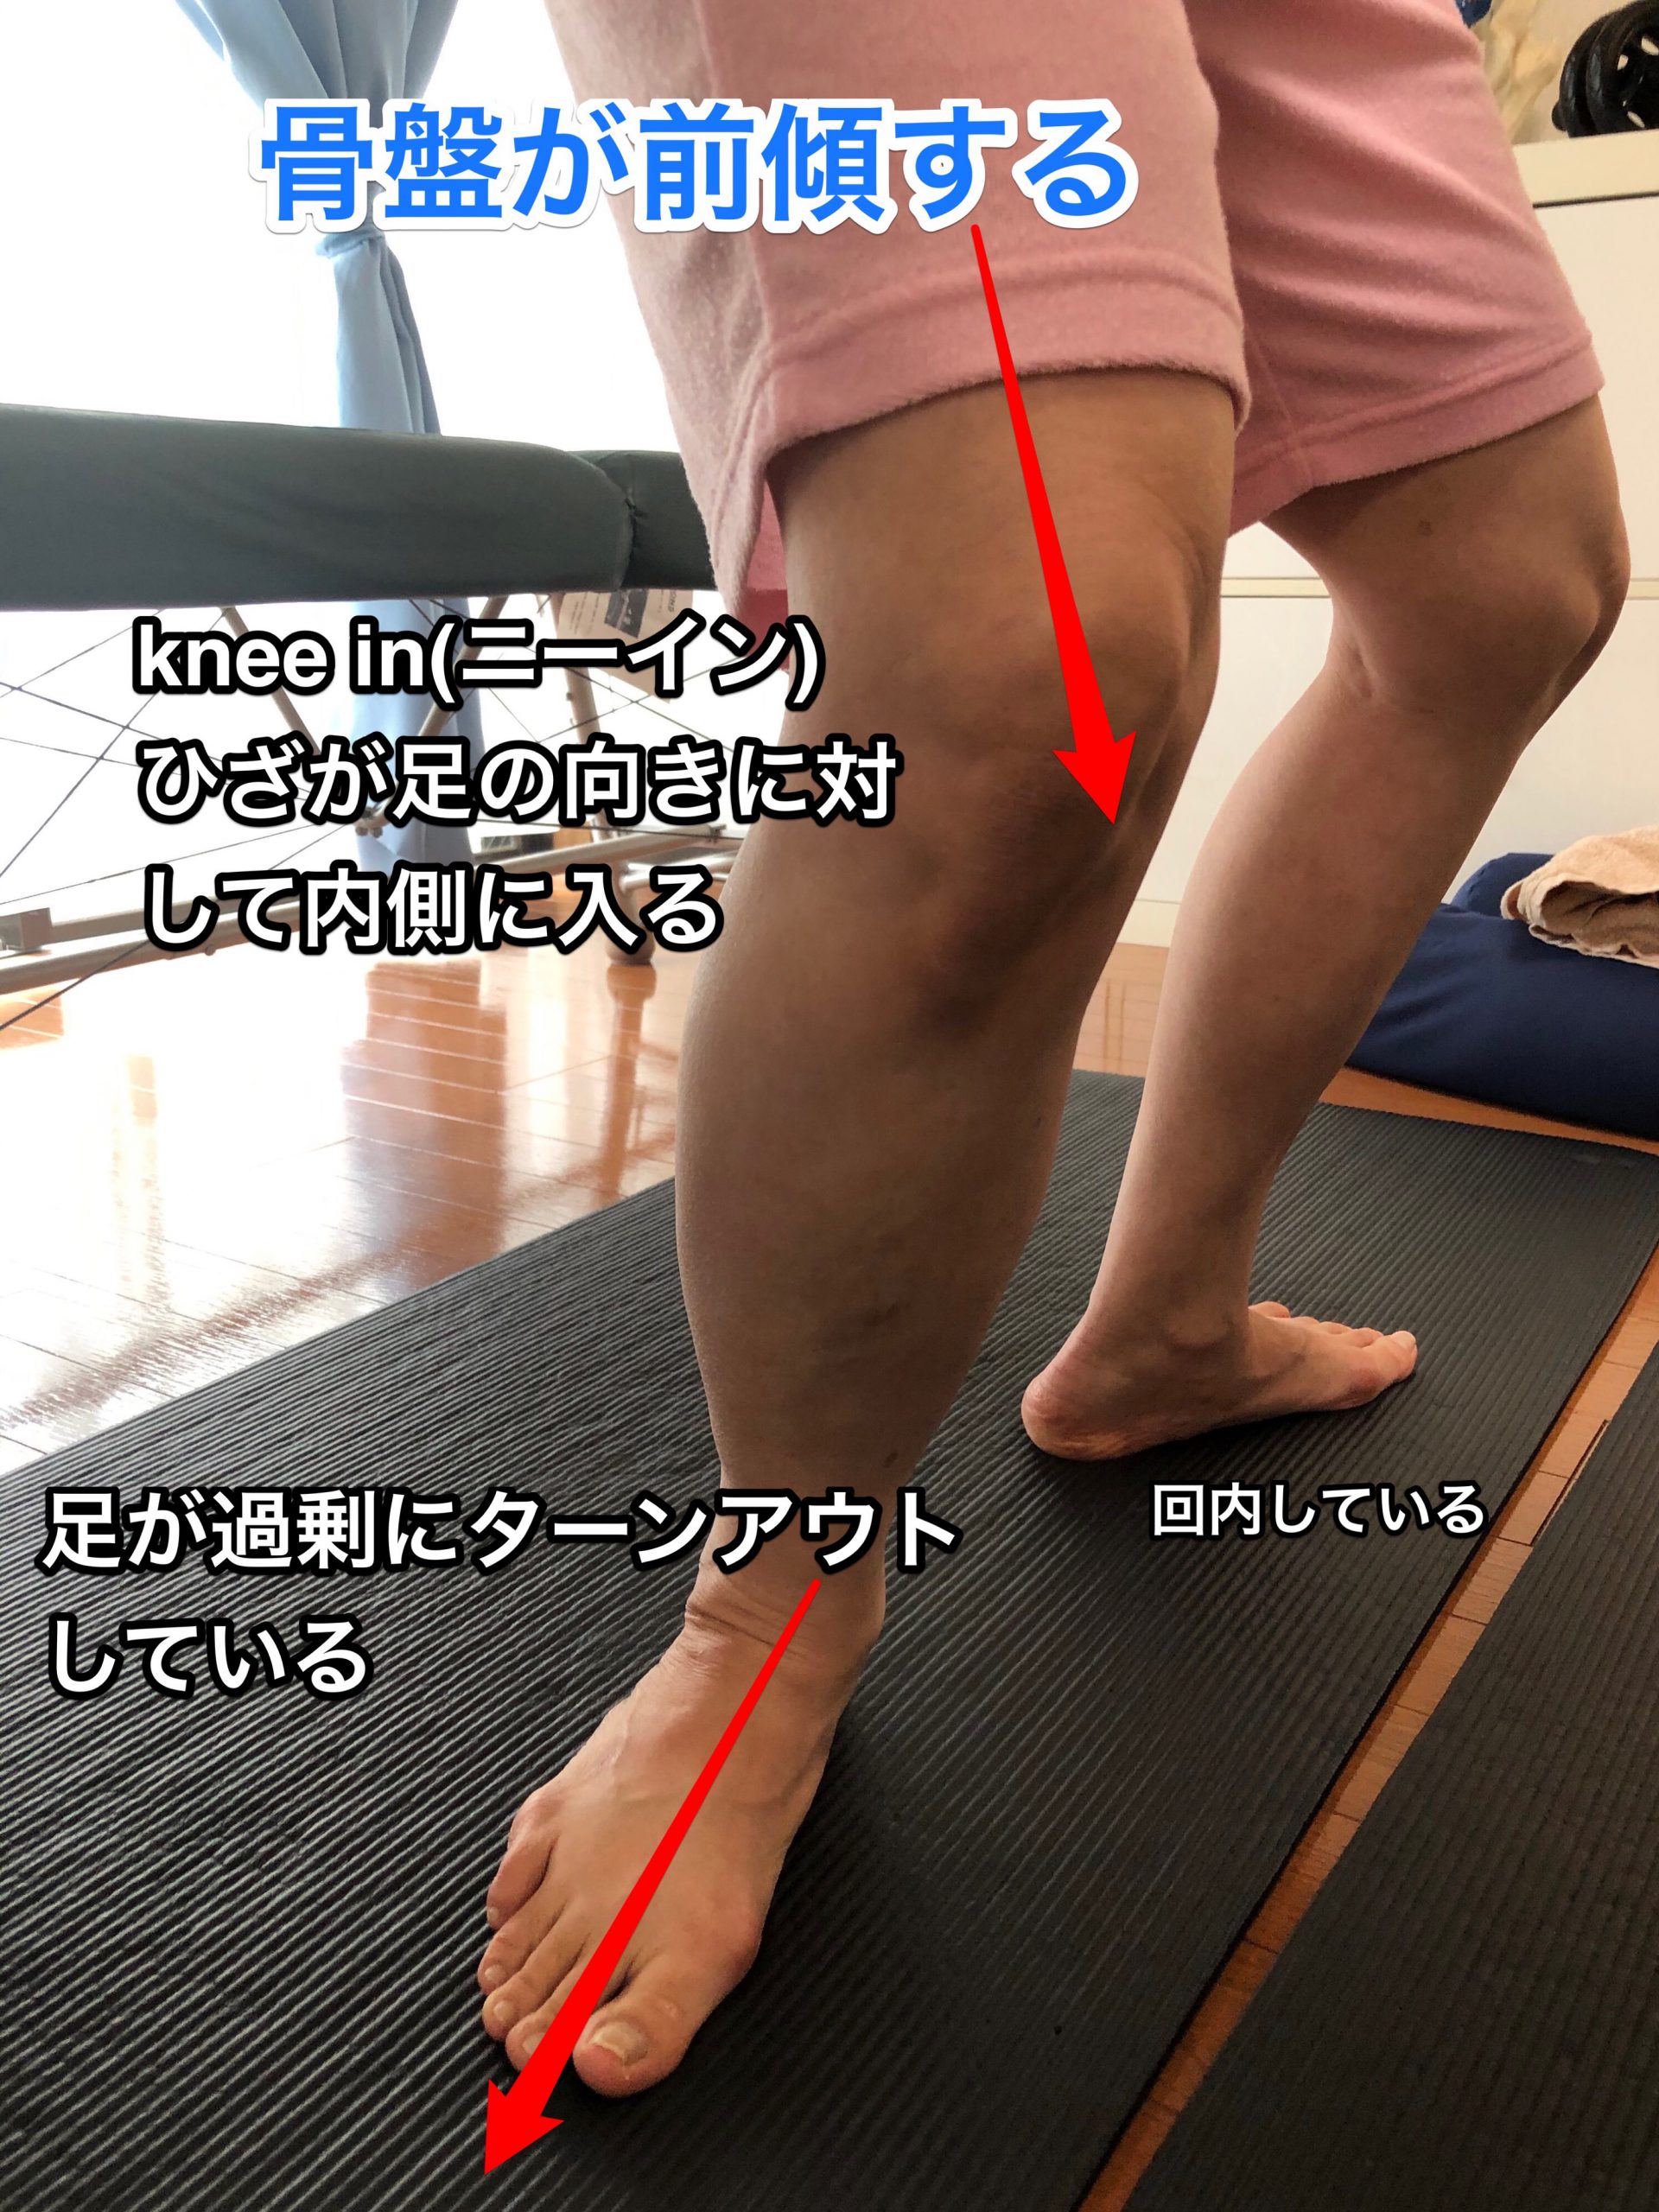 骨盤前傾 偽ヒップアップ 反り腰 の癖があるとまずい理由 ひざ痛にも関わるふくらはぎと足裏の筋肉が弱る きこうカイロ施術院